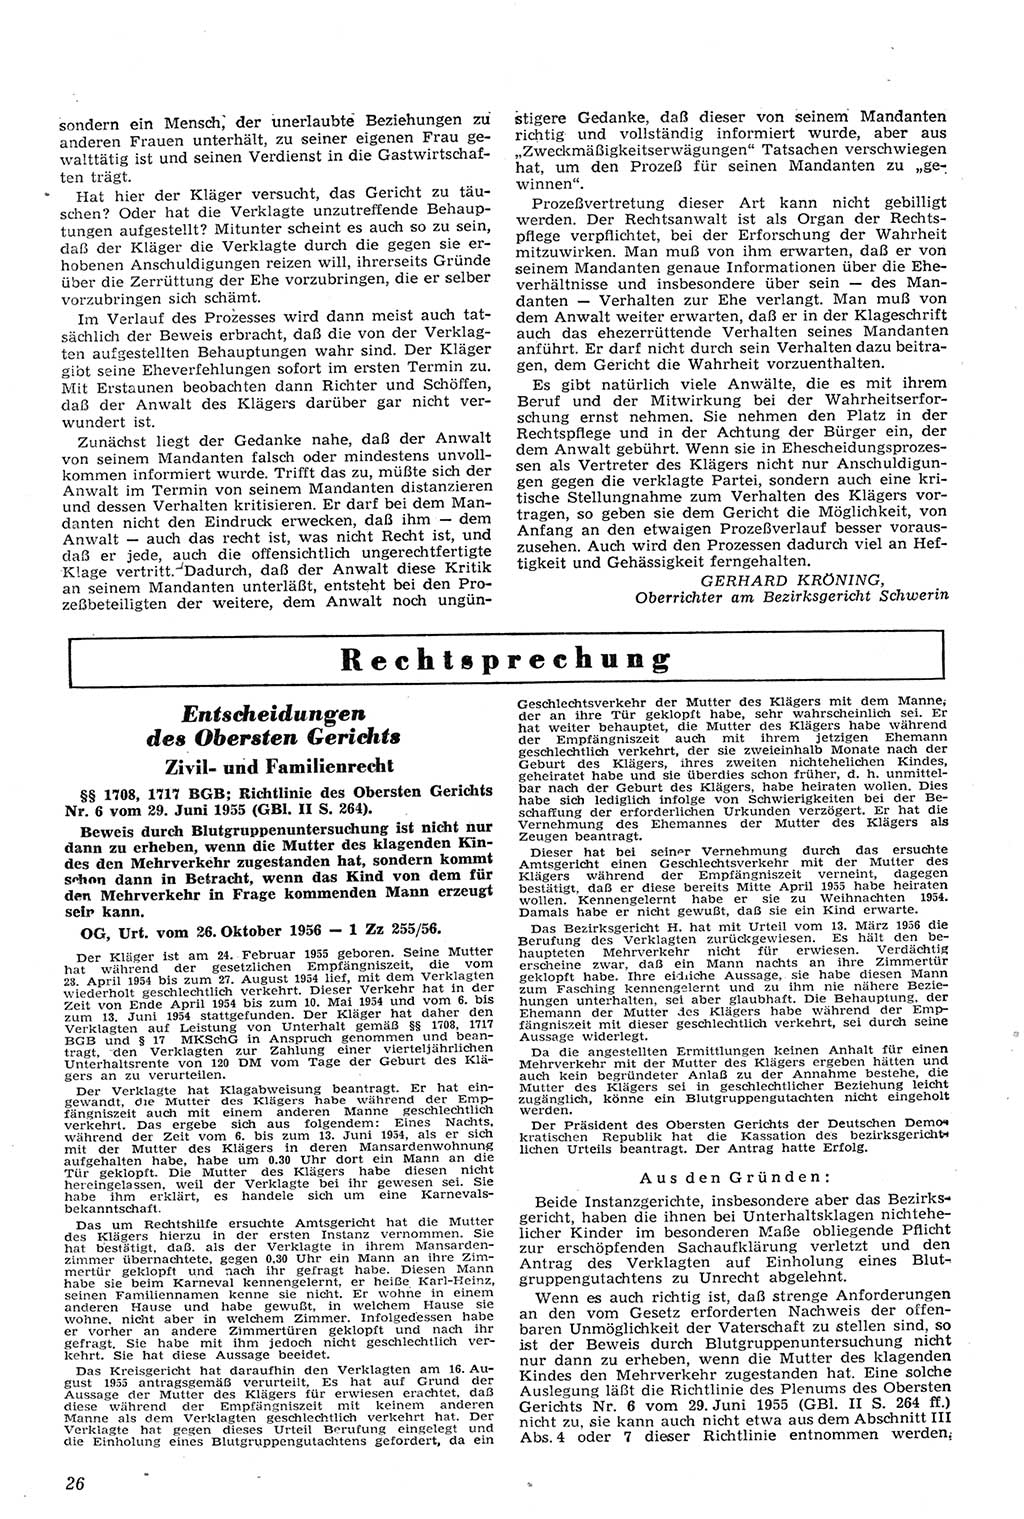 Neue Justiz (NJ), Zeitschrift für Recht und Rechtswissenschaft [Deutsche Demokratische Republik (DDR)], 11. Jahrgang 1957, Seite 26 (NJ DDR 1957, S. 26)